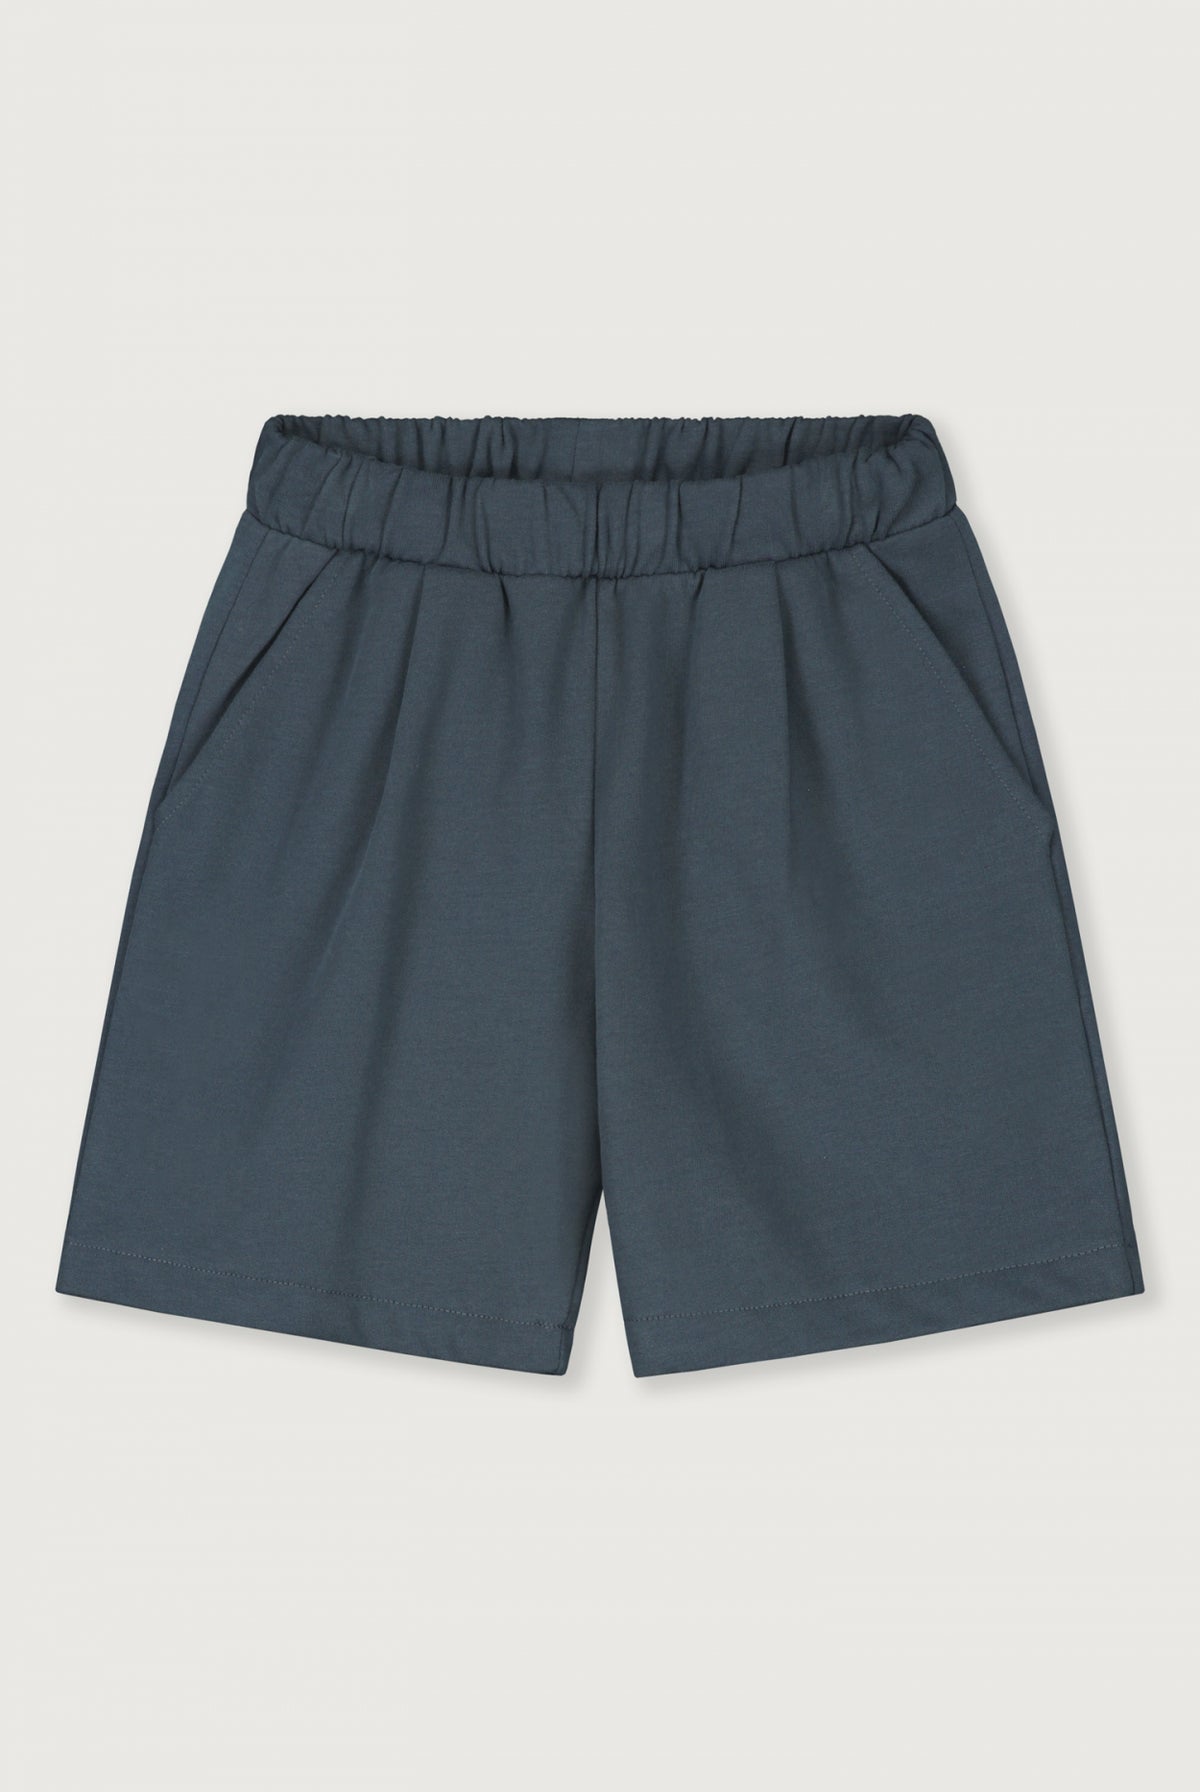 Bermuda Shorts Blue Grey